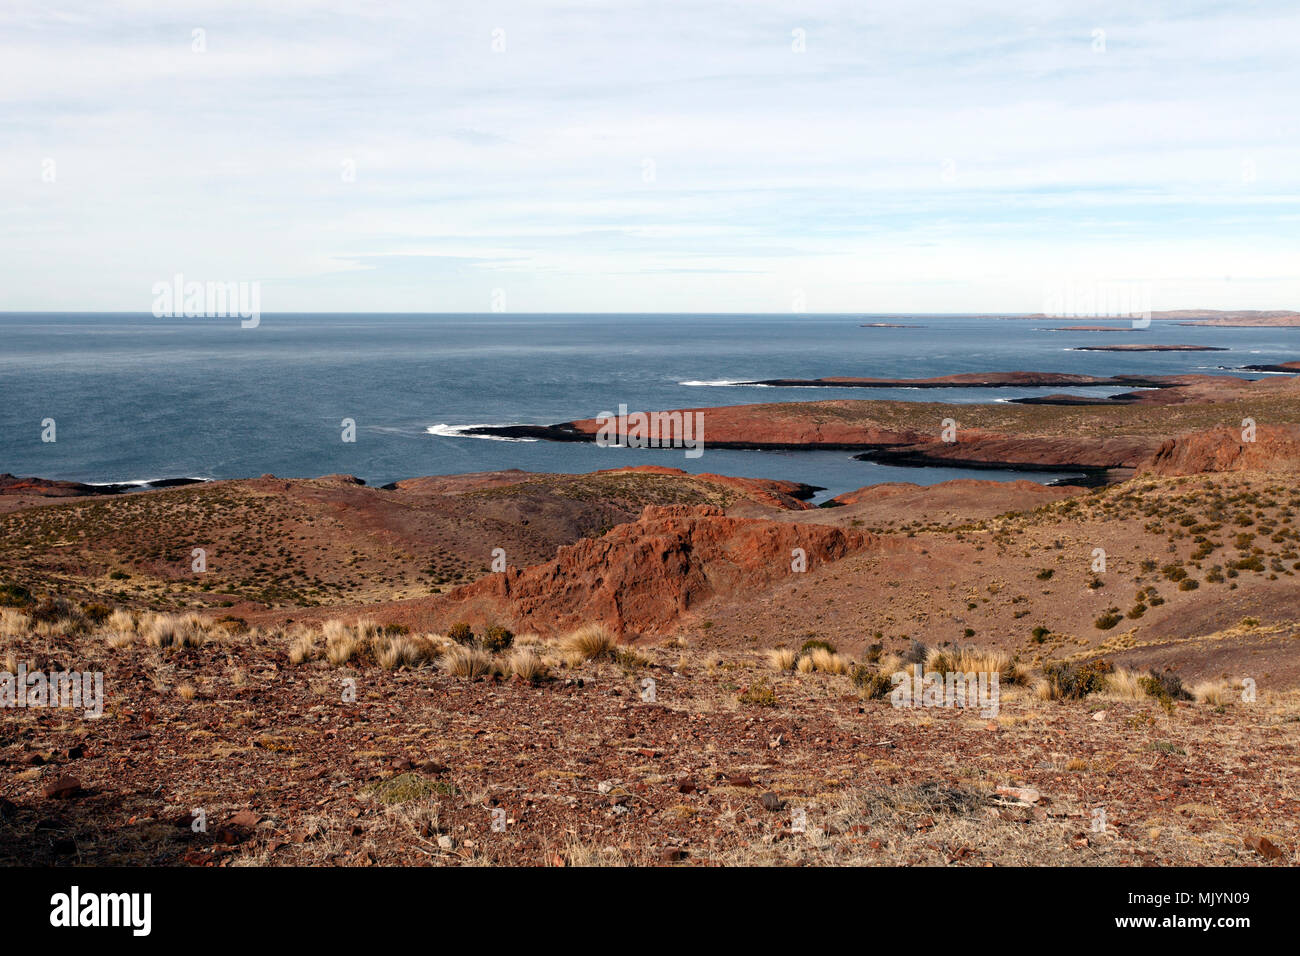 La géologie et les caractéristiques géologiques et la structure du roc sur la plage et la côte de Cabo Dos Bahias, près de Camarones, la Province de Chubut, en Argentine, en Patagonie. Banque D'Images